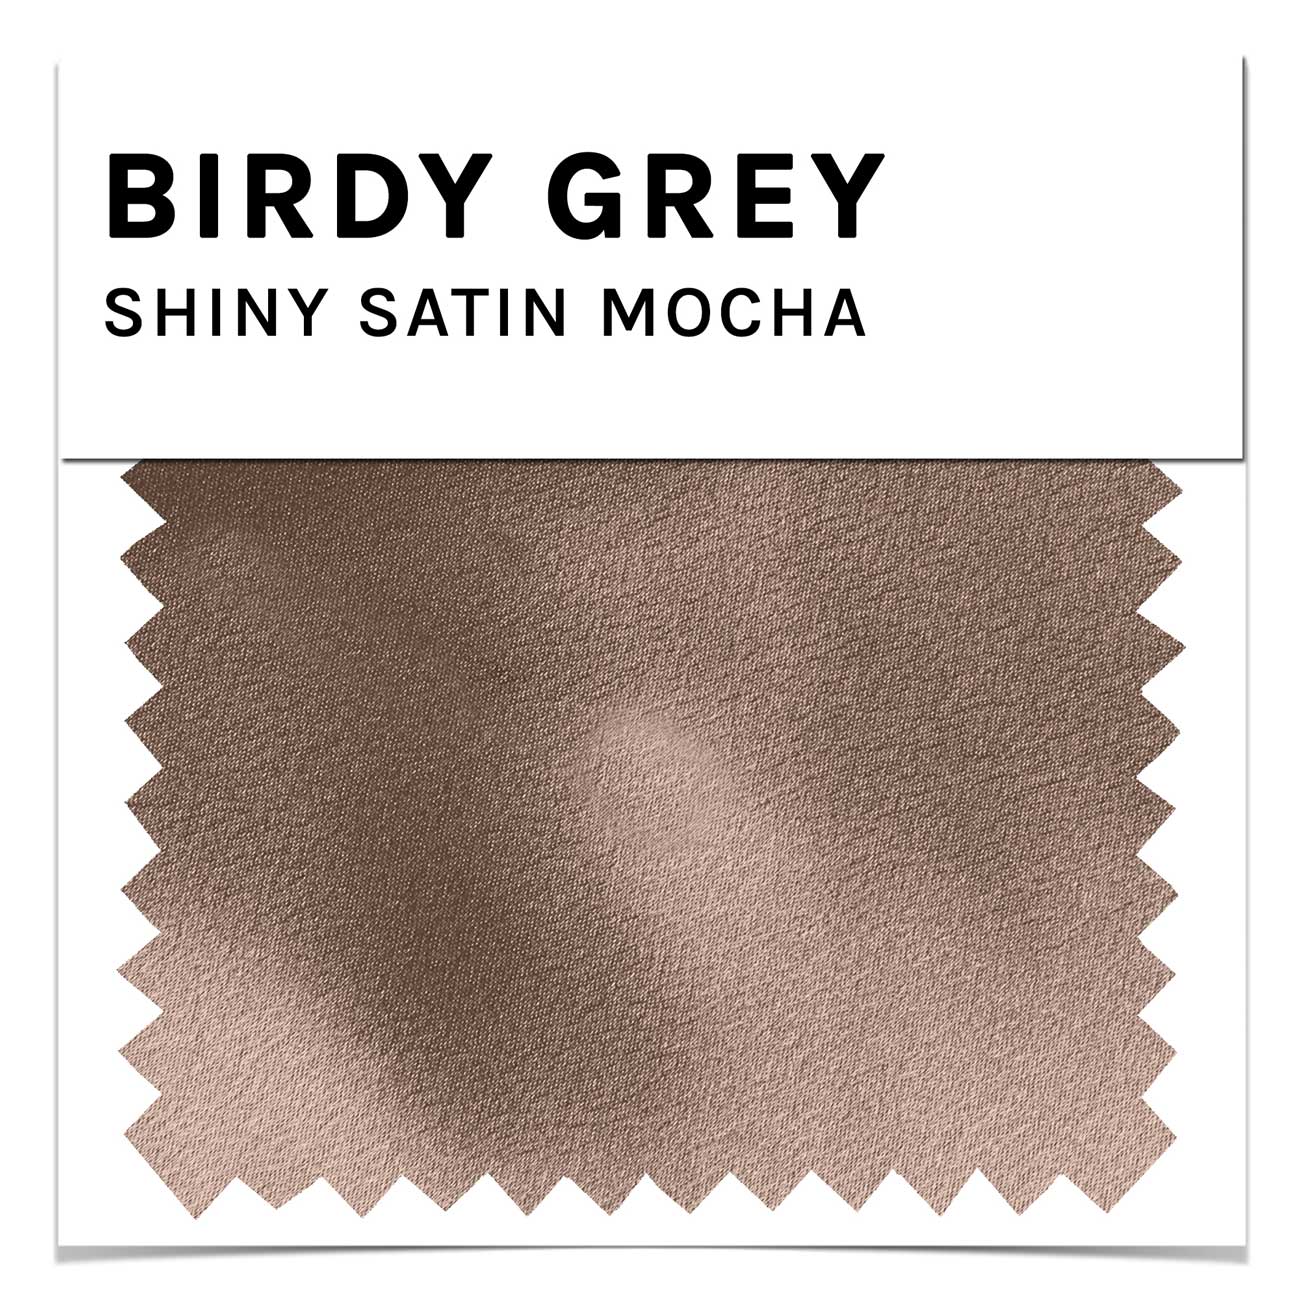 Swatch - Shiny Satin in Mocha by Birdy Grey